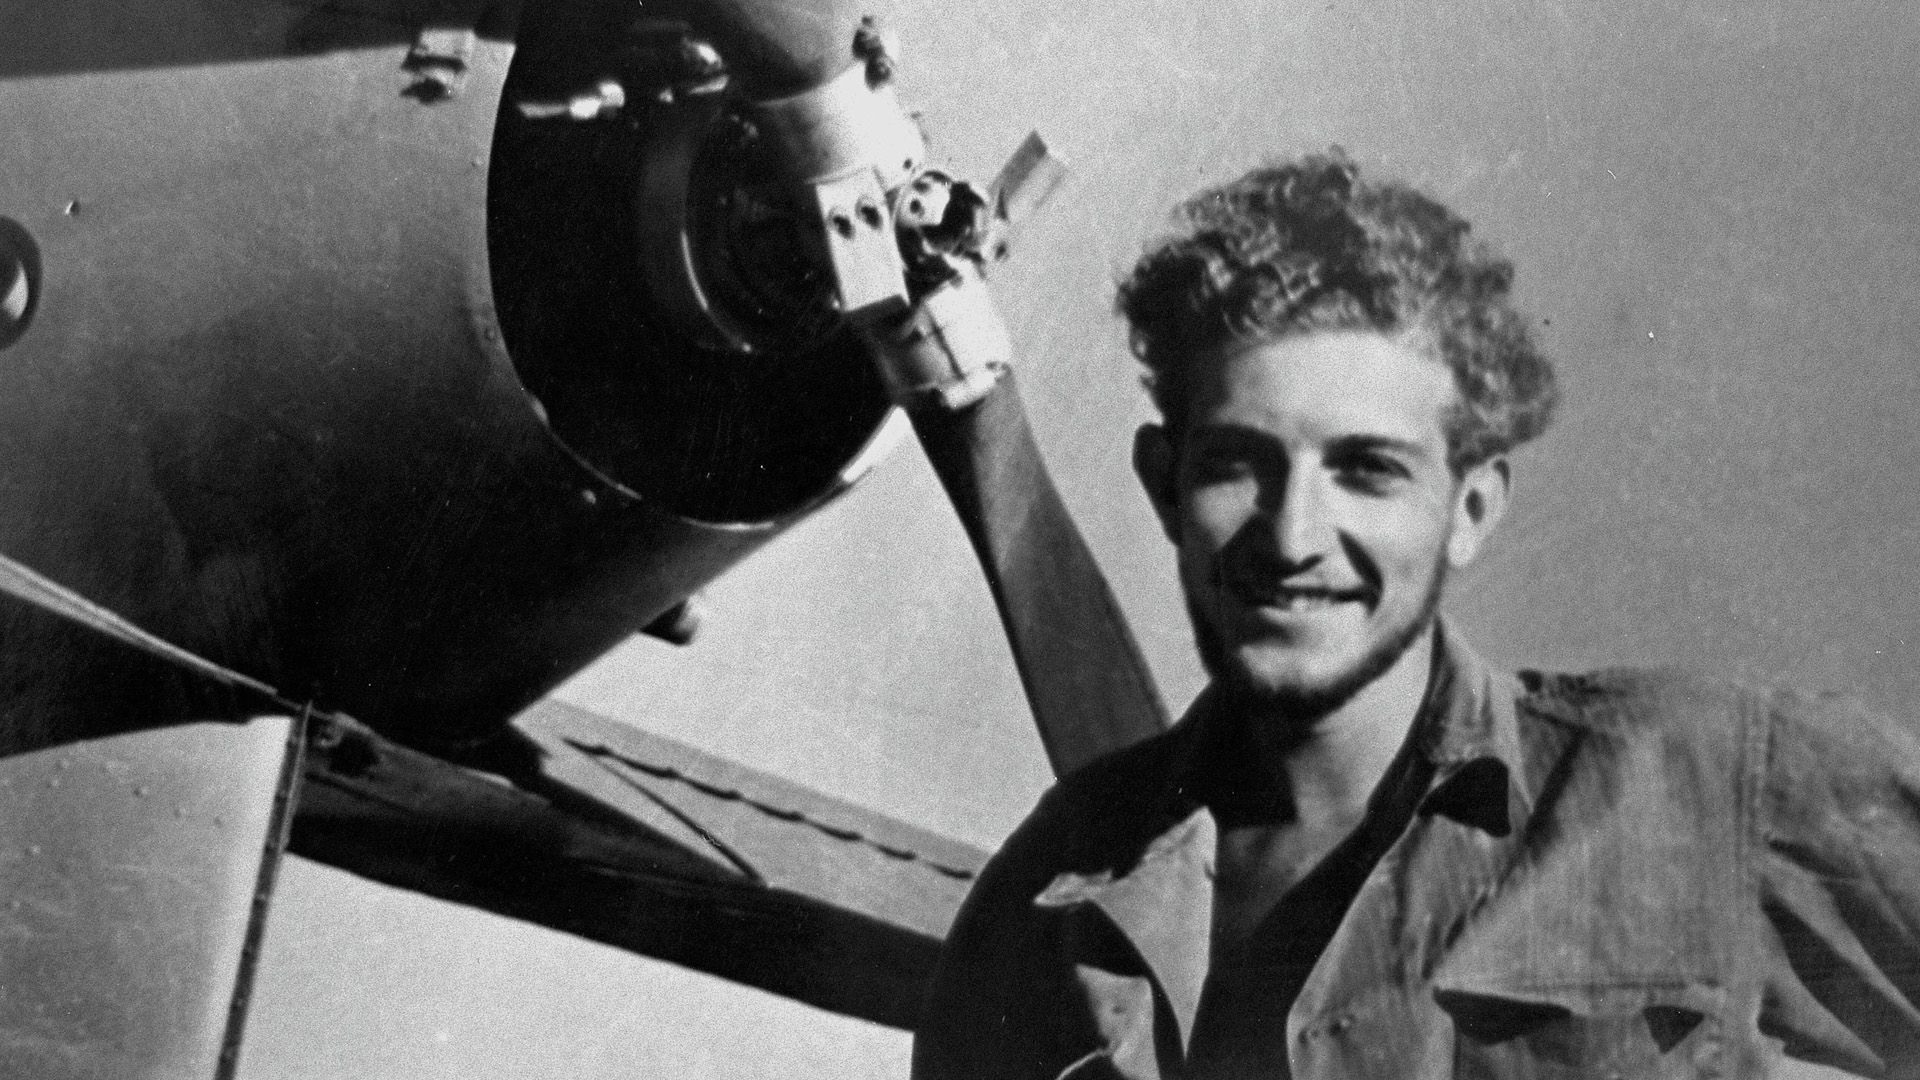 Der junge Eser Weizmann als Pilot im Jahr 1949